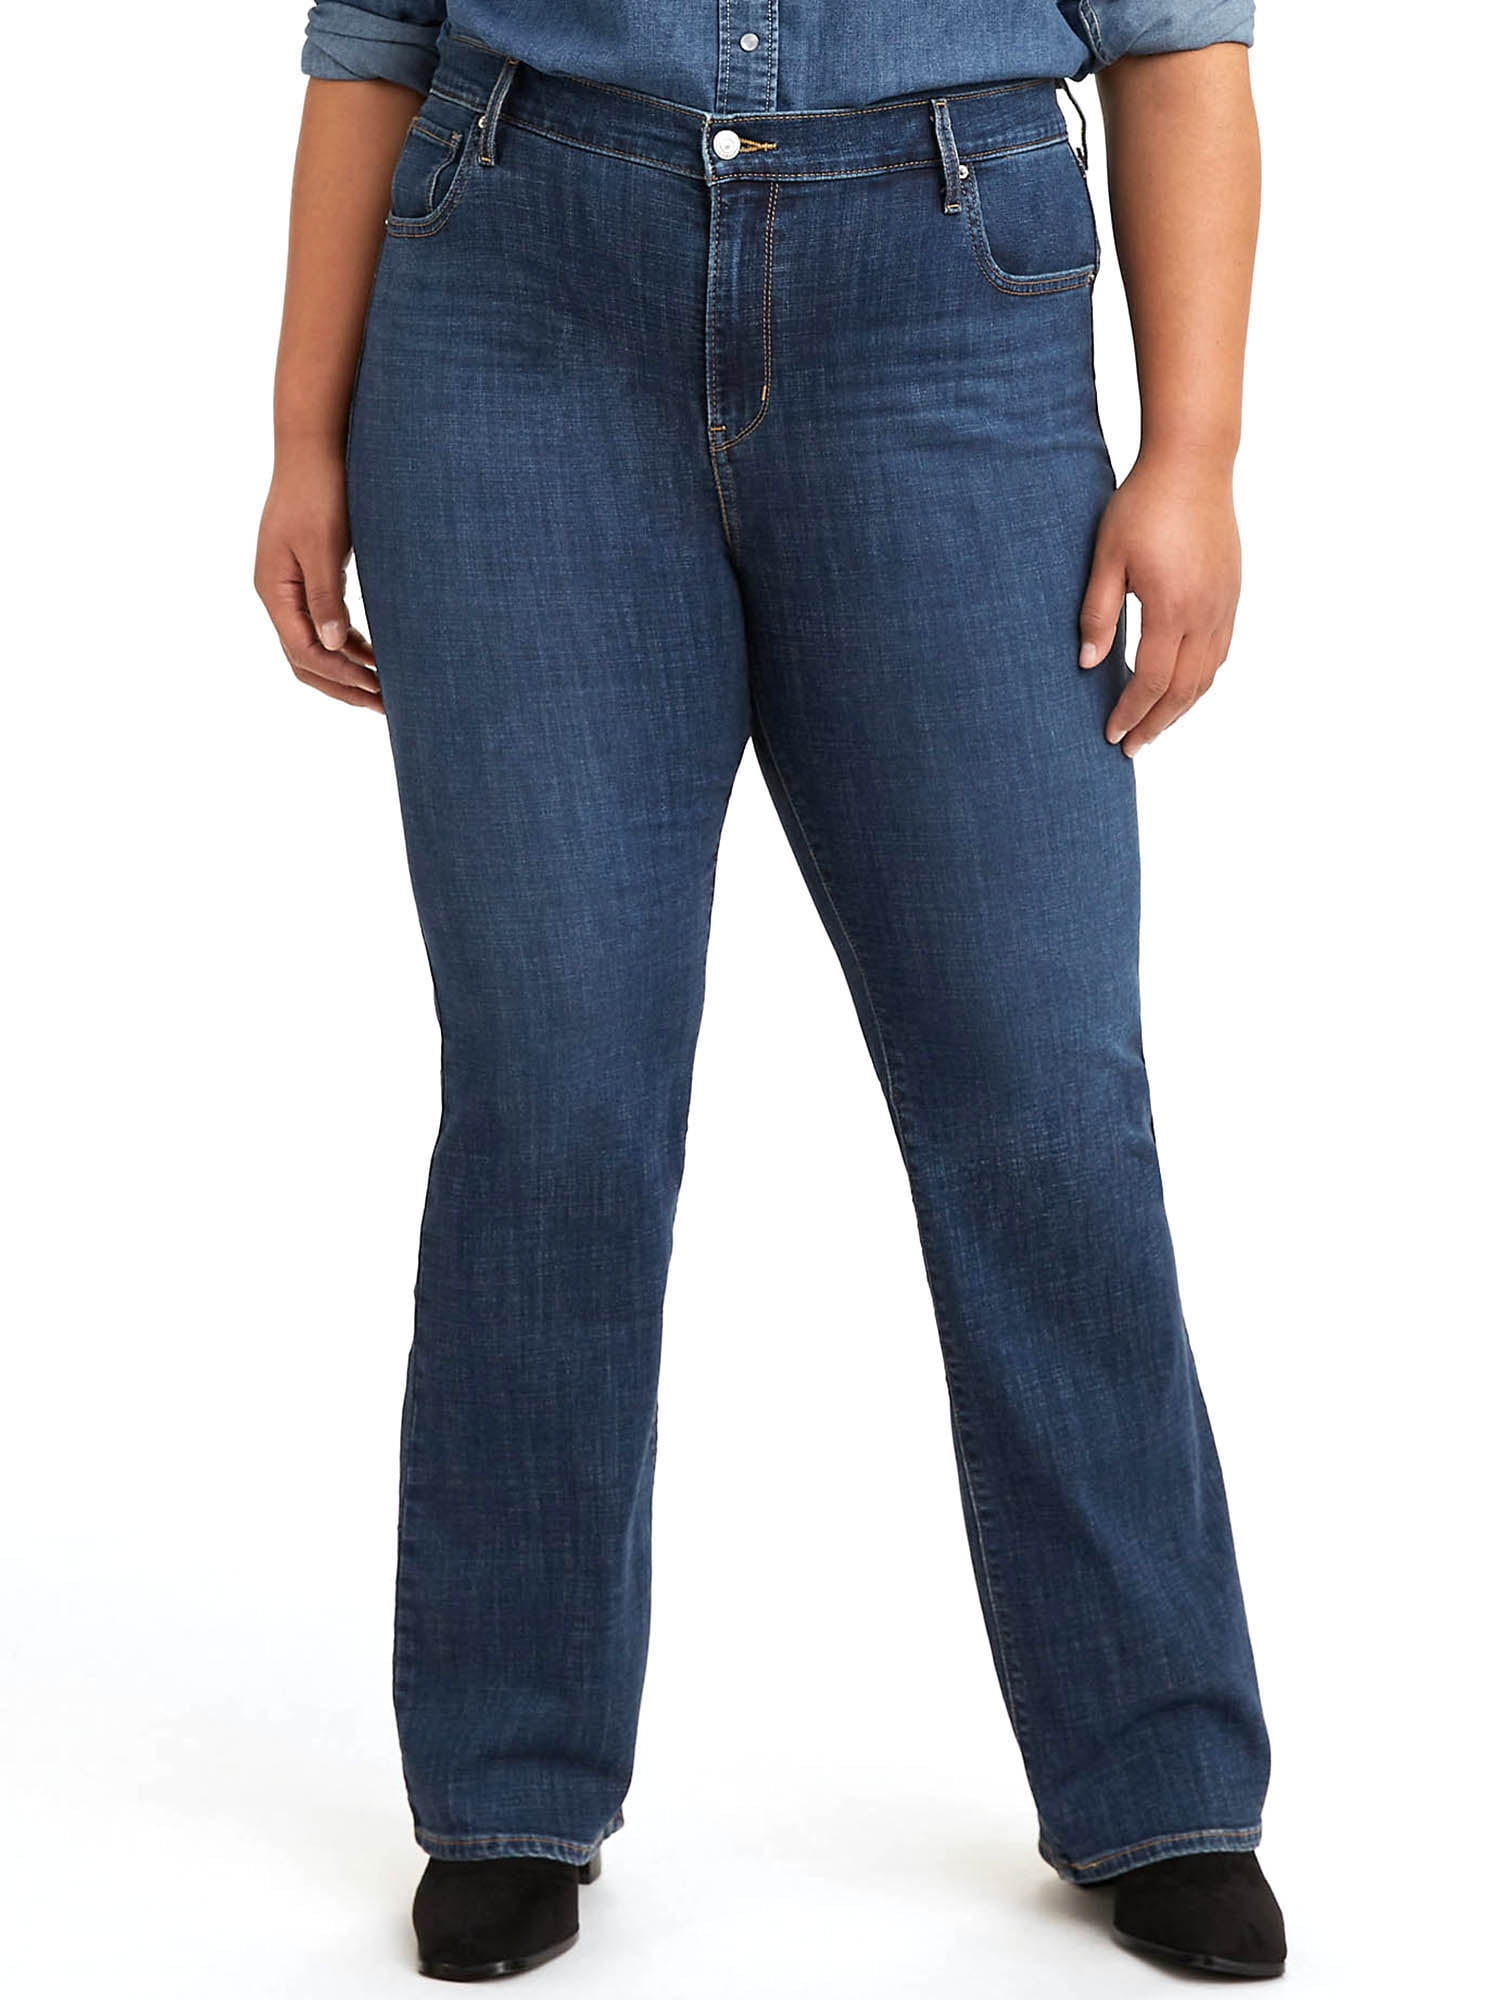 Levi's Women's Plus Size 725 High-Rise Bootcut Jeans - Walmart.com